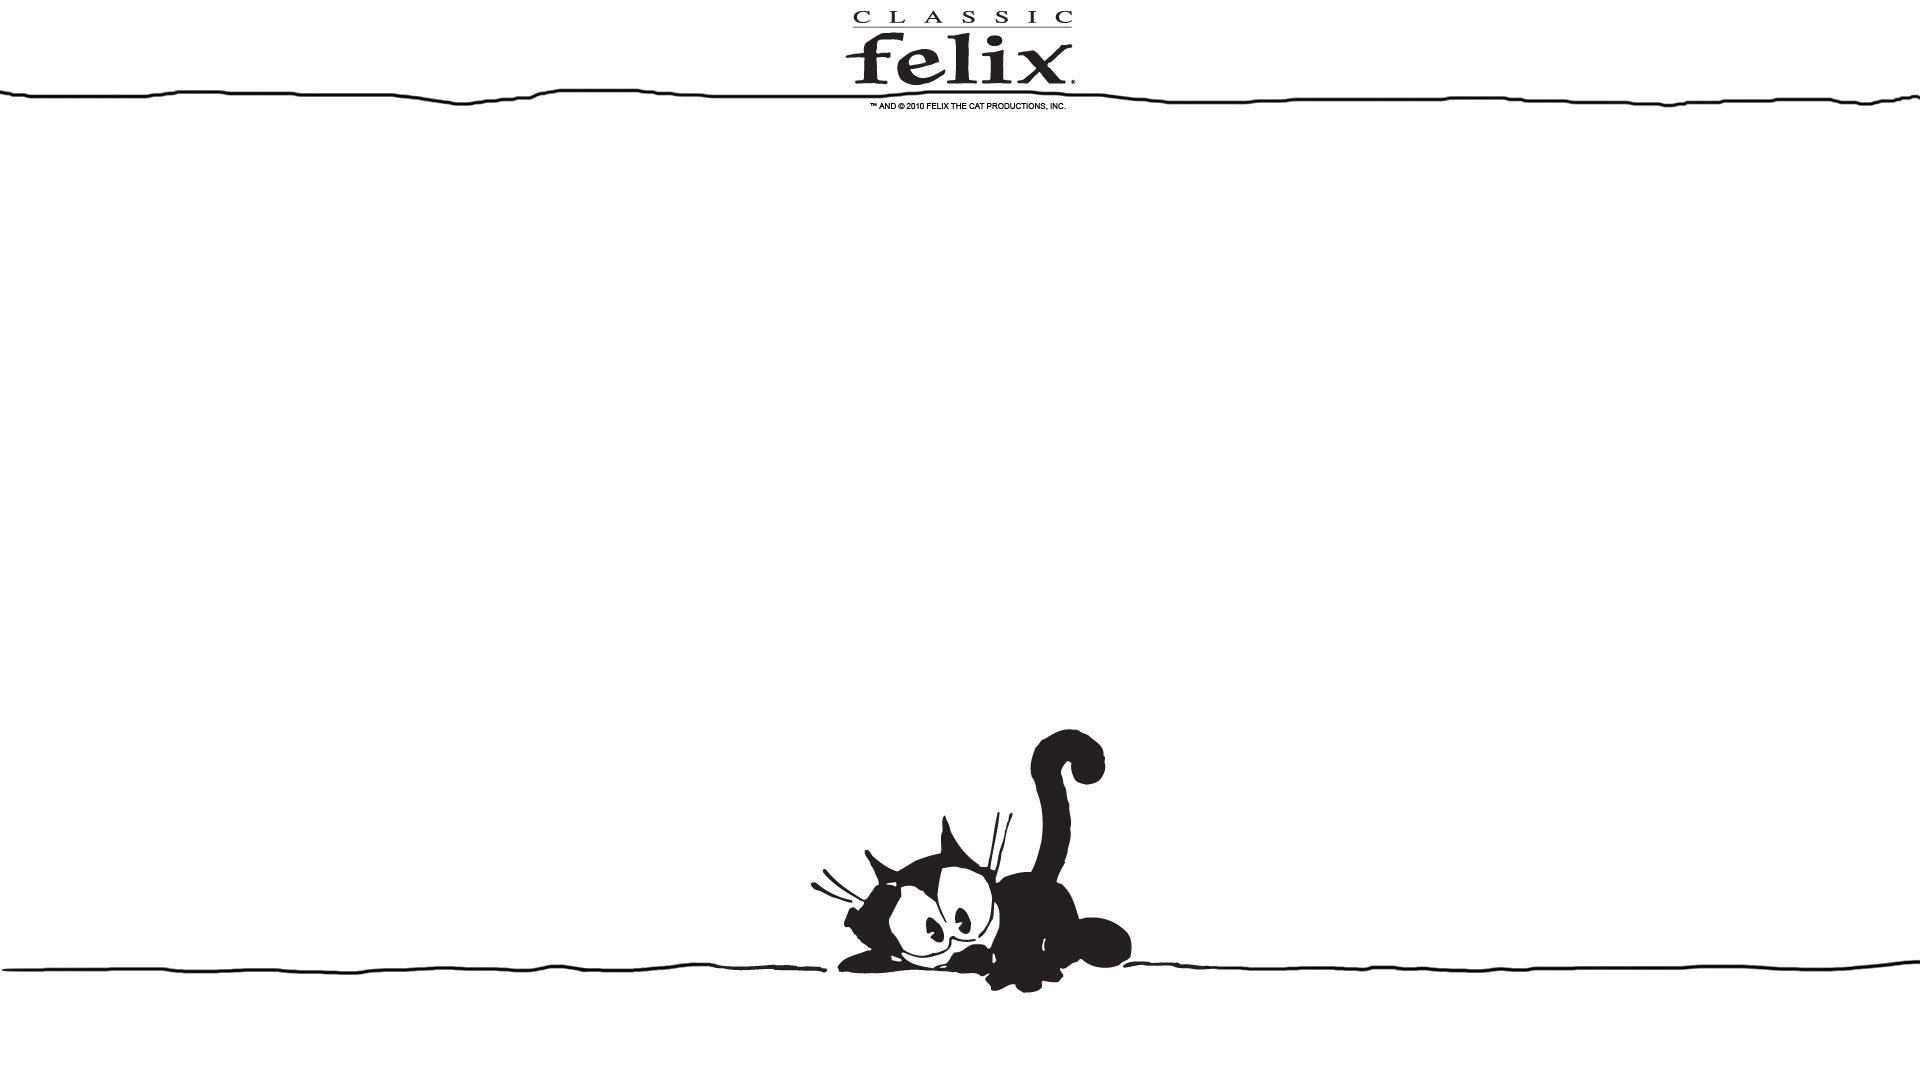 Felix the cat wallpaper